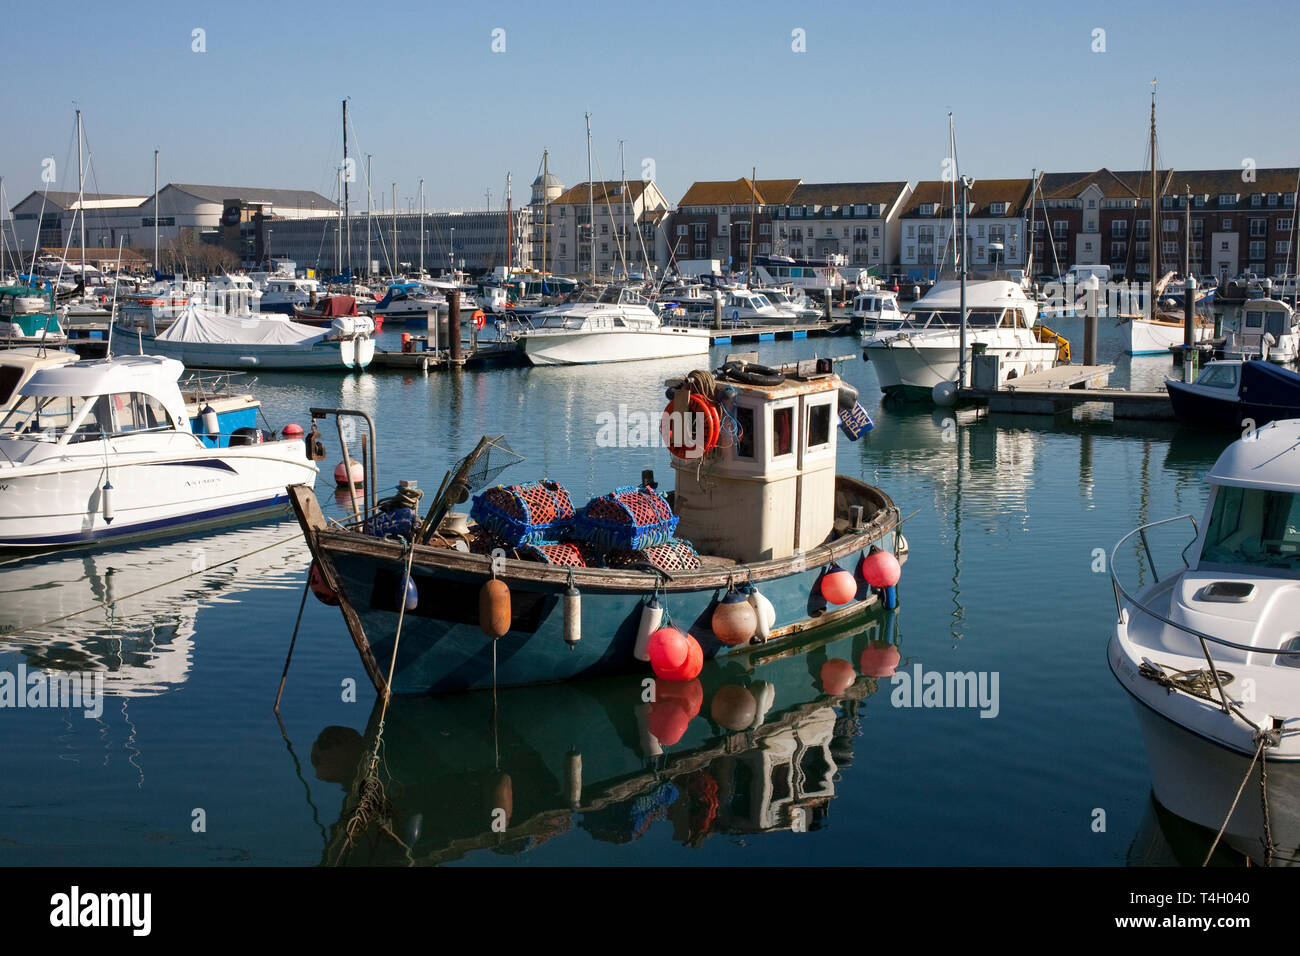 Weymouth marina avec des bateaux de pêche et yachts amarrés Banque D'Images